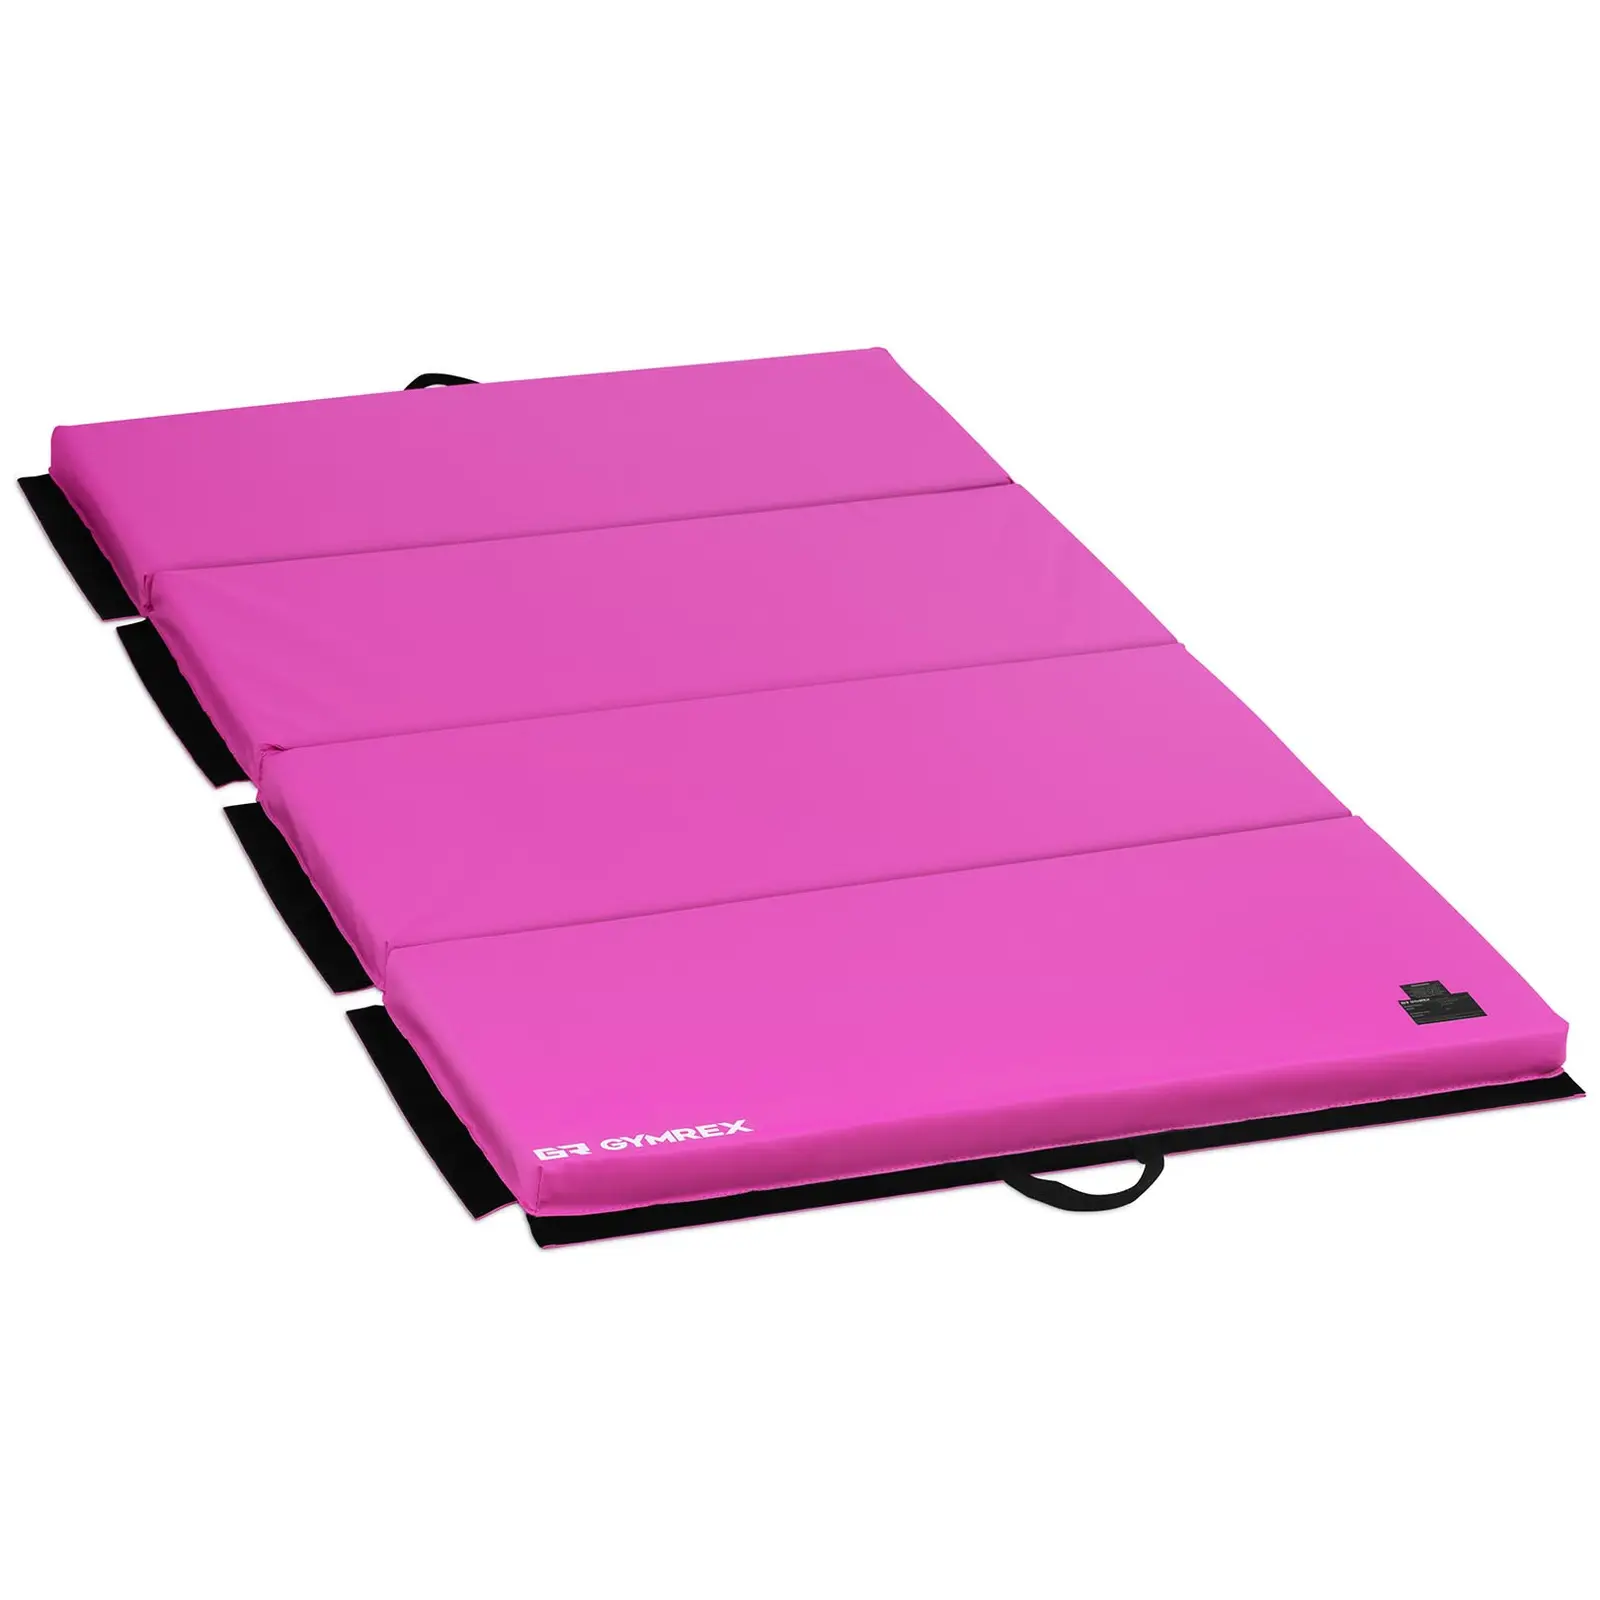 Mata gimnastyczna - 200 x 100 x 5 cm - składana - różowa - obciążenie do 170 kg